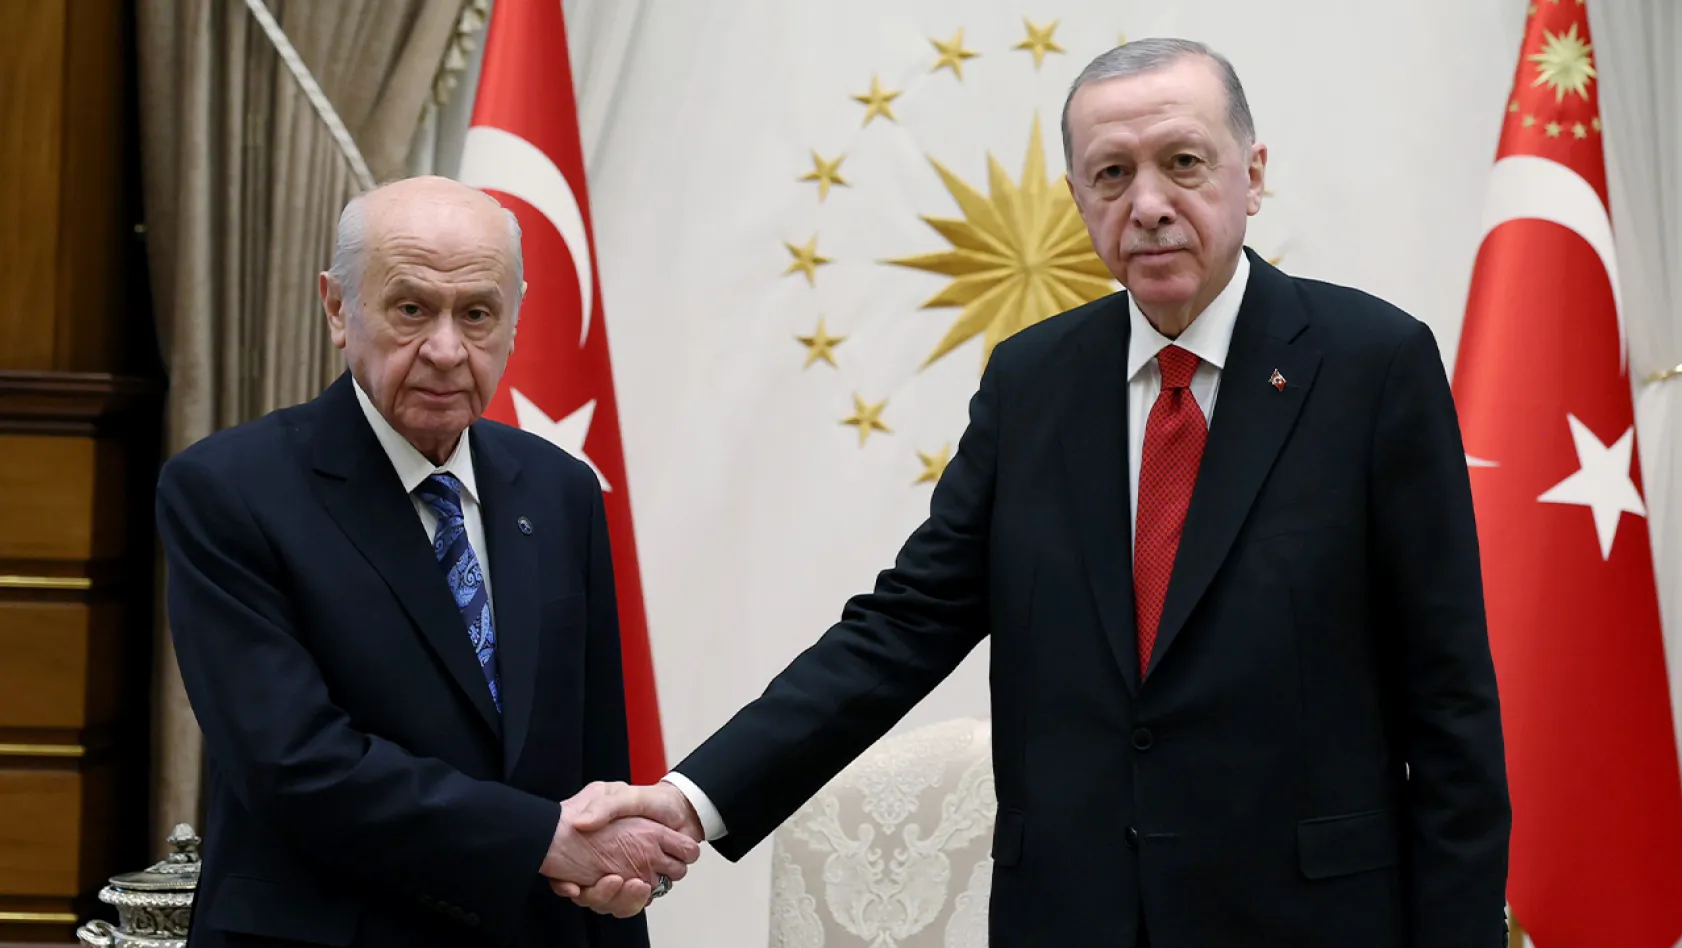 Erdoğan ve Bahçeli Beştepe'de bir araya geldi